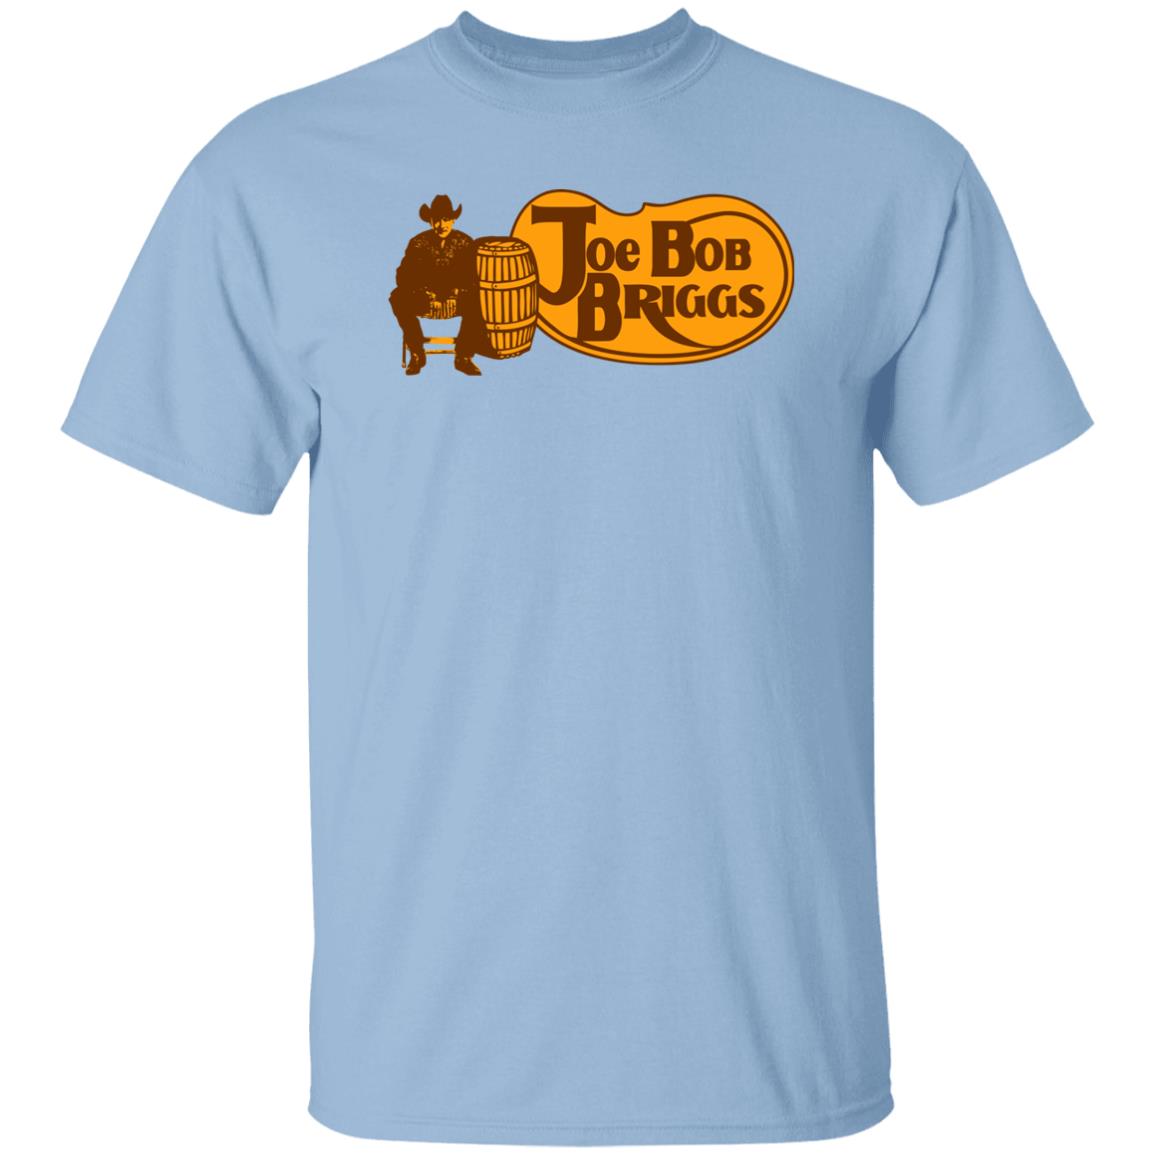 Joe Bob Briggs Shirt Brandon Ramos Horrorfam